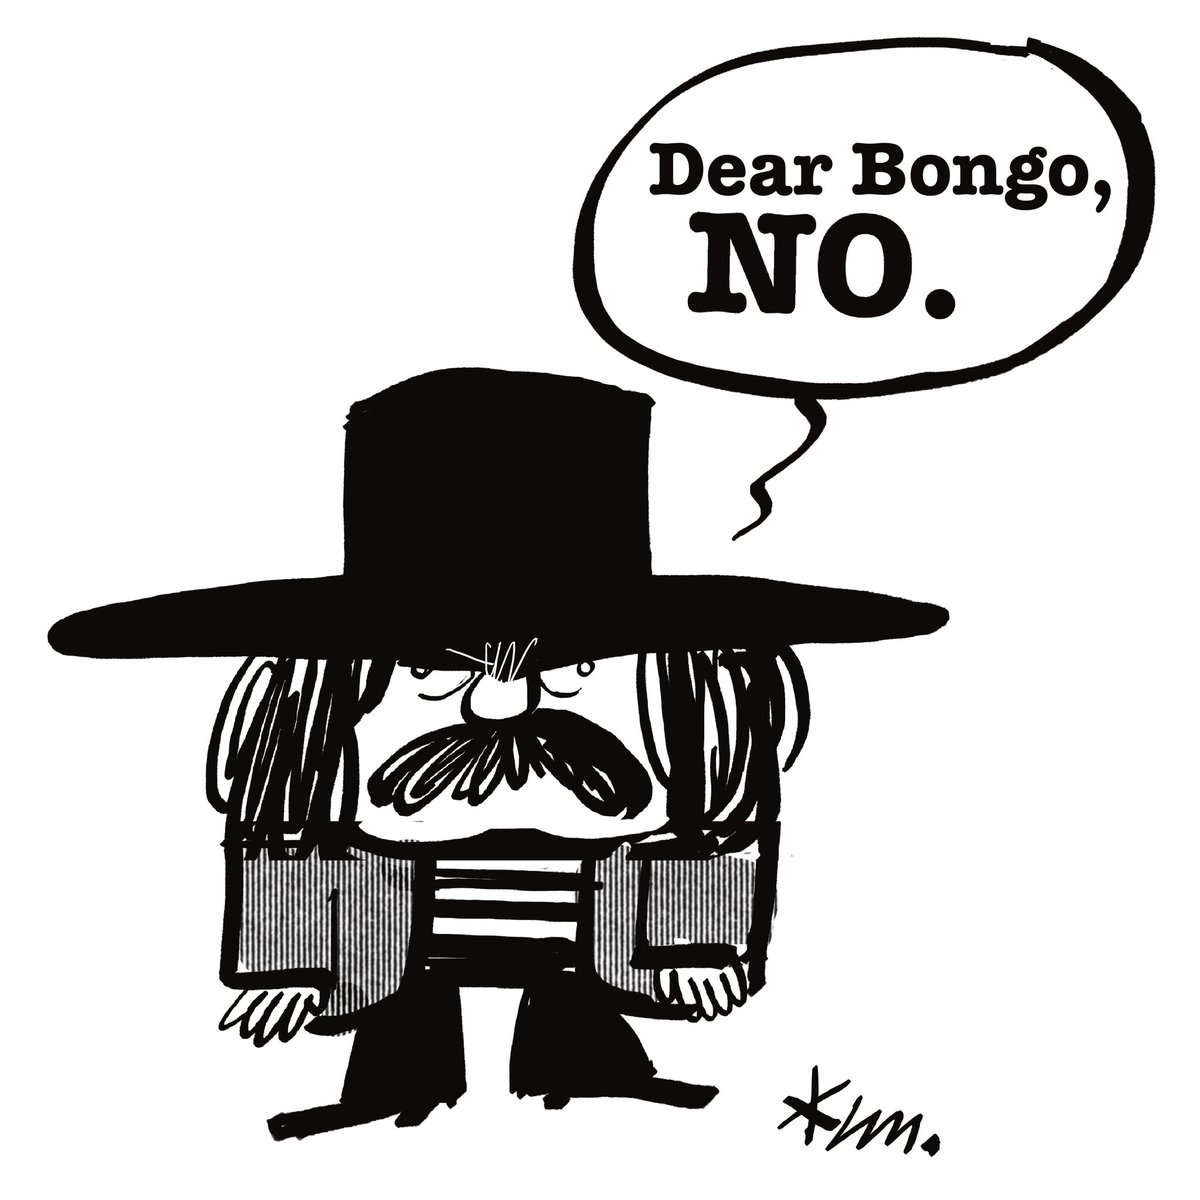 Mi top 3 de Captain Beefheart: El ‘Trout Mask Replica’, el ‘Shiny Beast’ y cuando Bono de U2 le preguntó si estaría interesado en grabar algo juntos, y el capitán le contestó con una carta escrita a mano que decía: